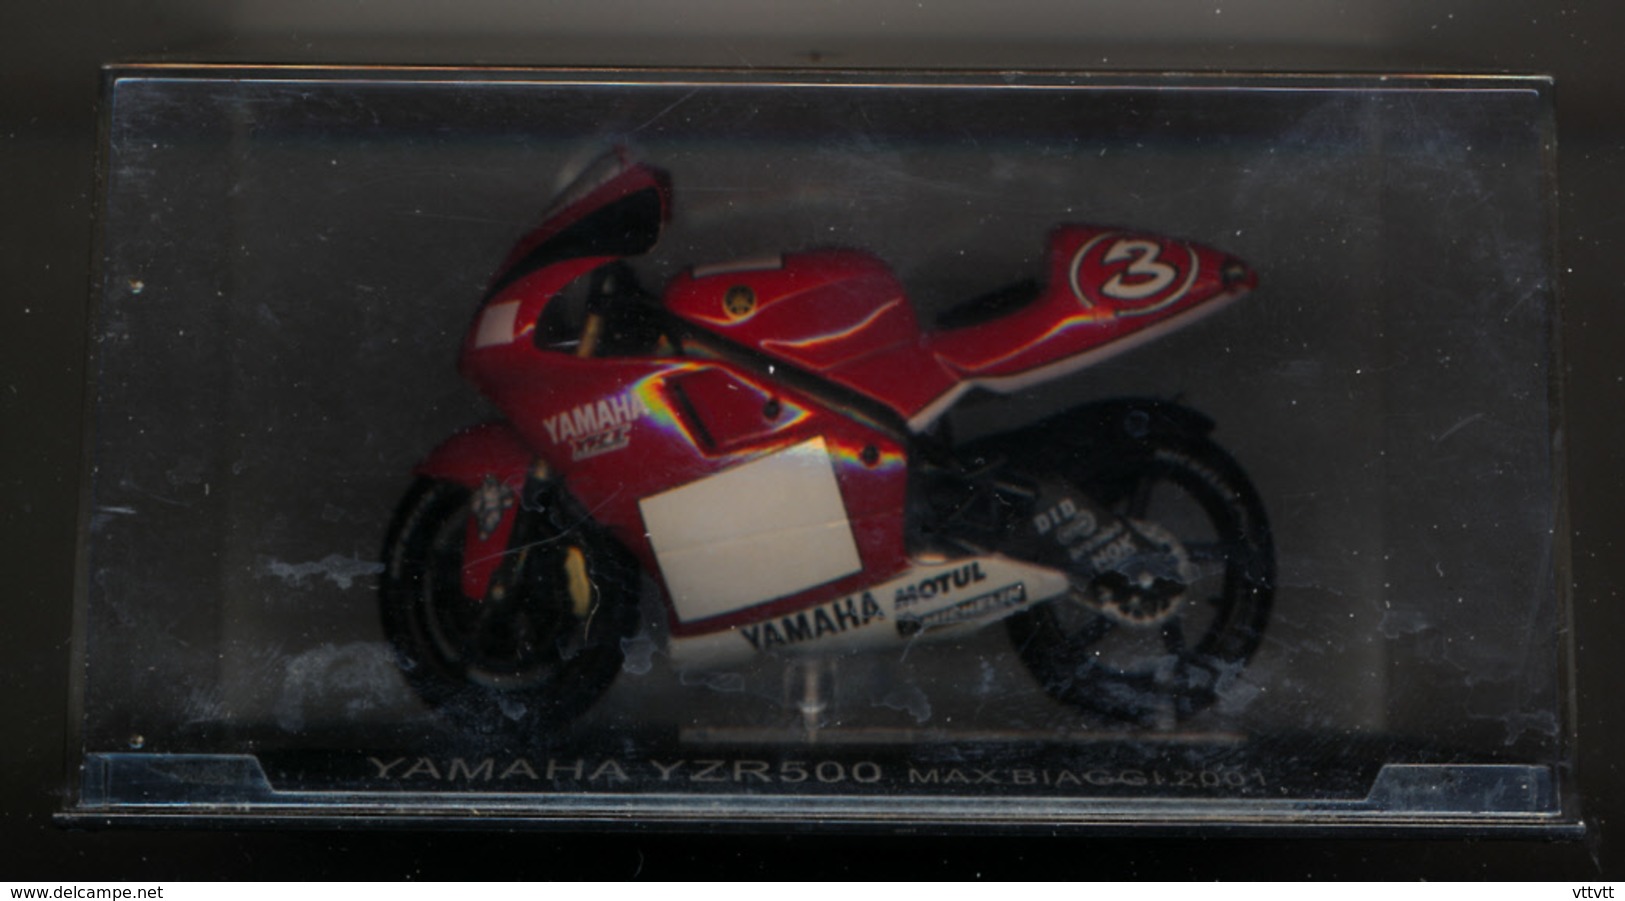 MOTO GP : YAMAHA YZR 500, MAX BIAGGI, 2001 - Motorfietsen